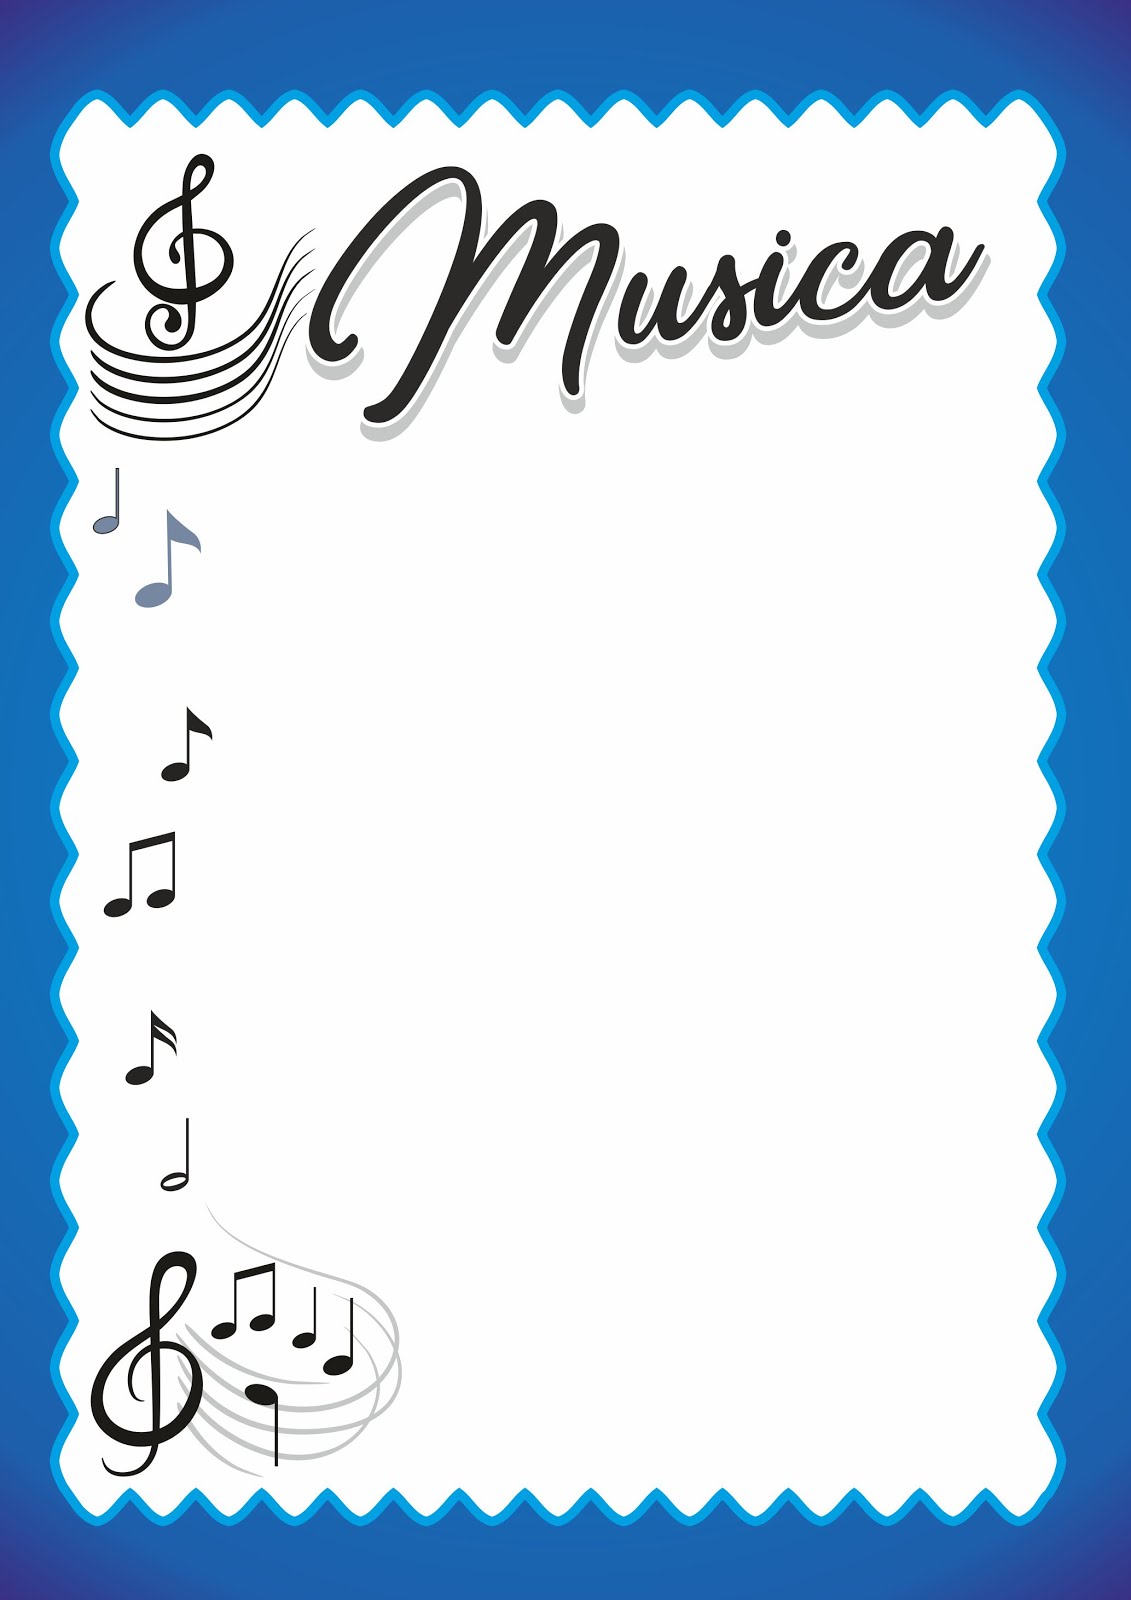 carátula de música | Recursos Educativos para Maestros